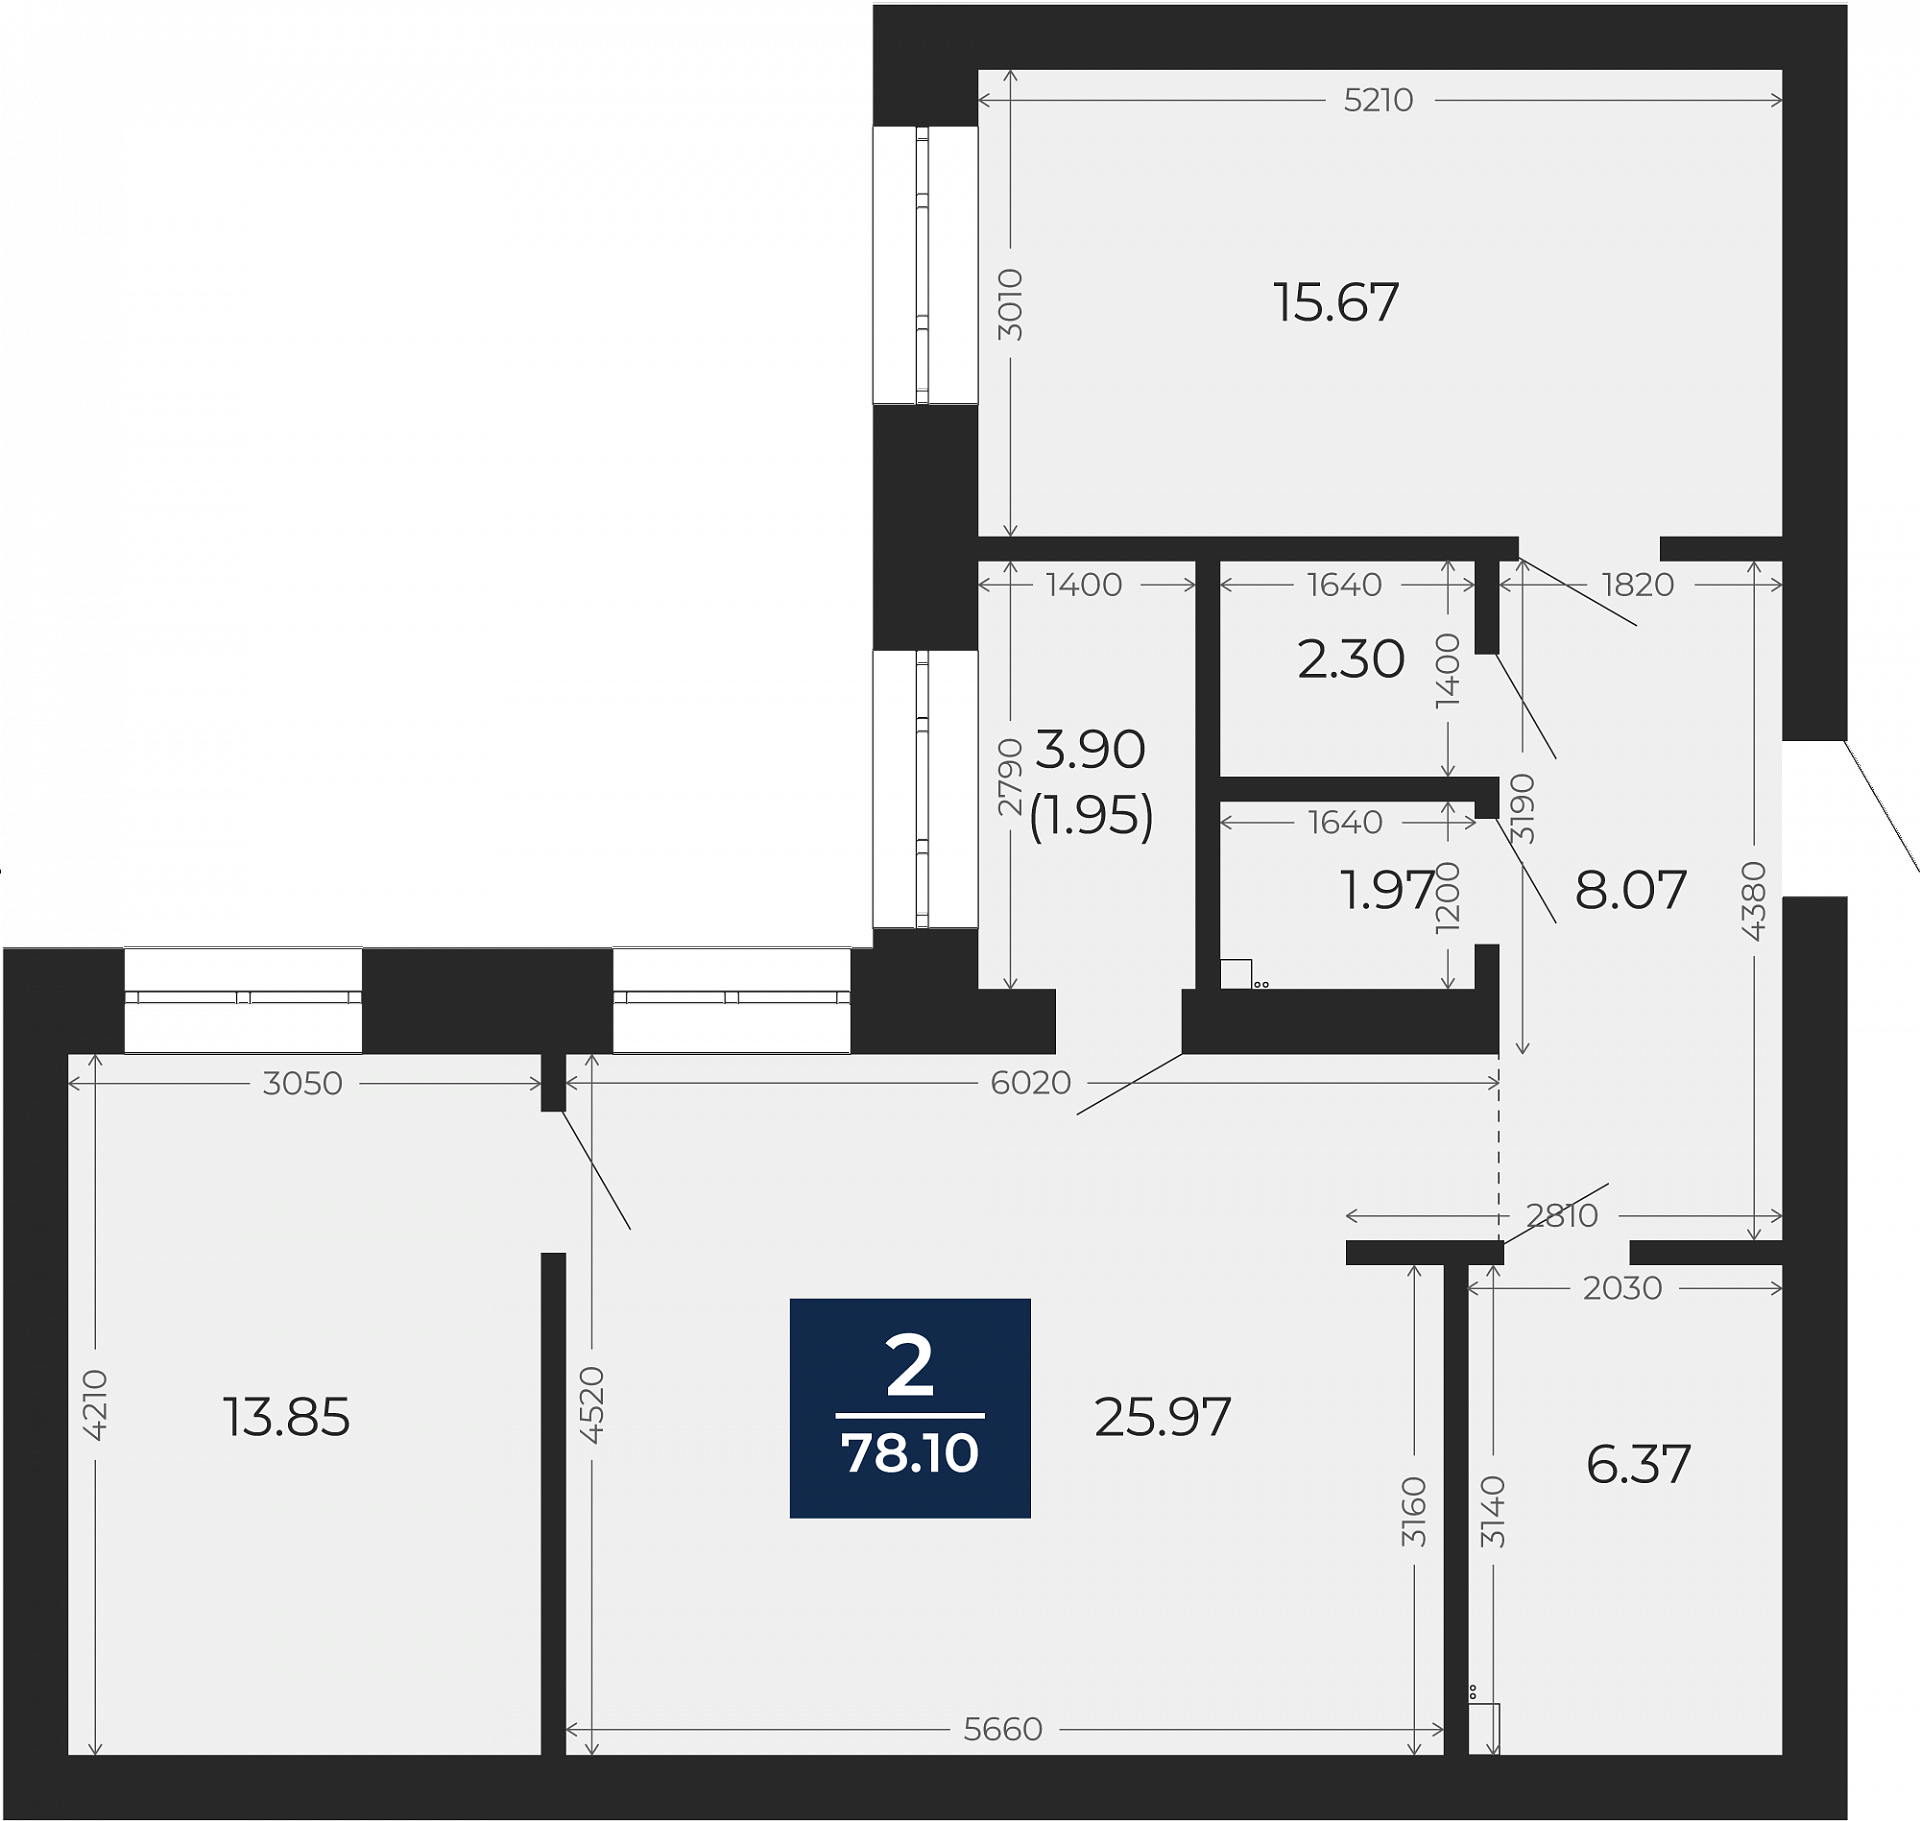 Квартира № 156, 2-комнатная, 78.1 кв. м, 6 этаж